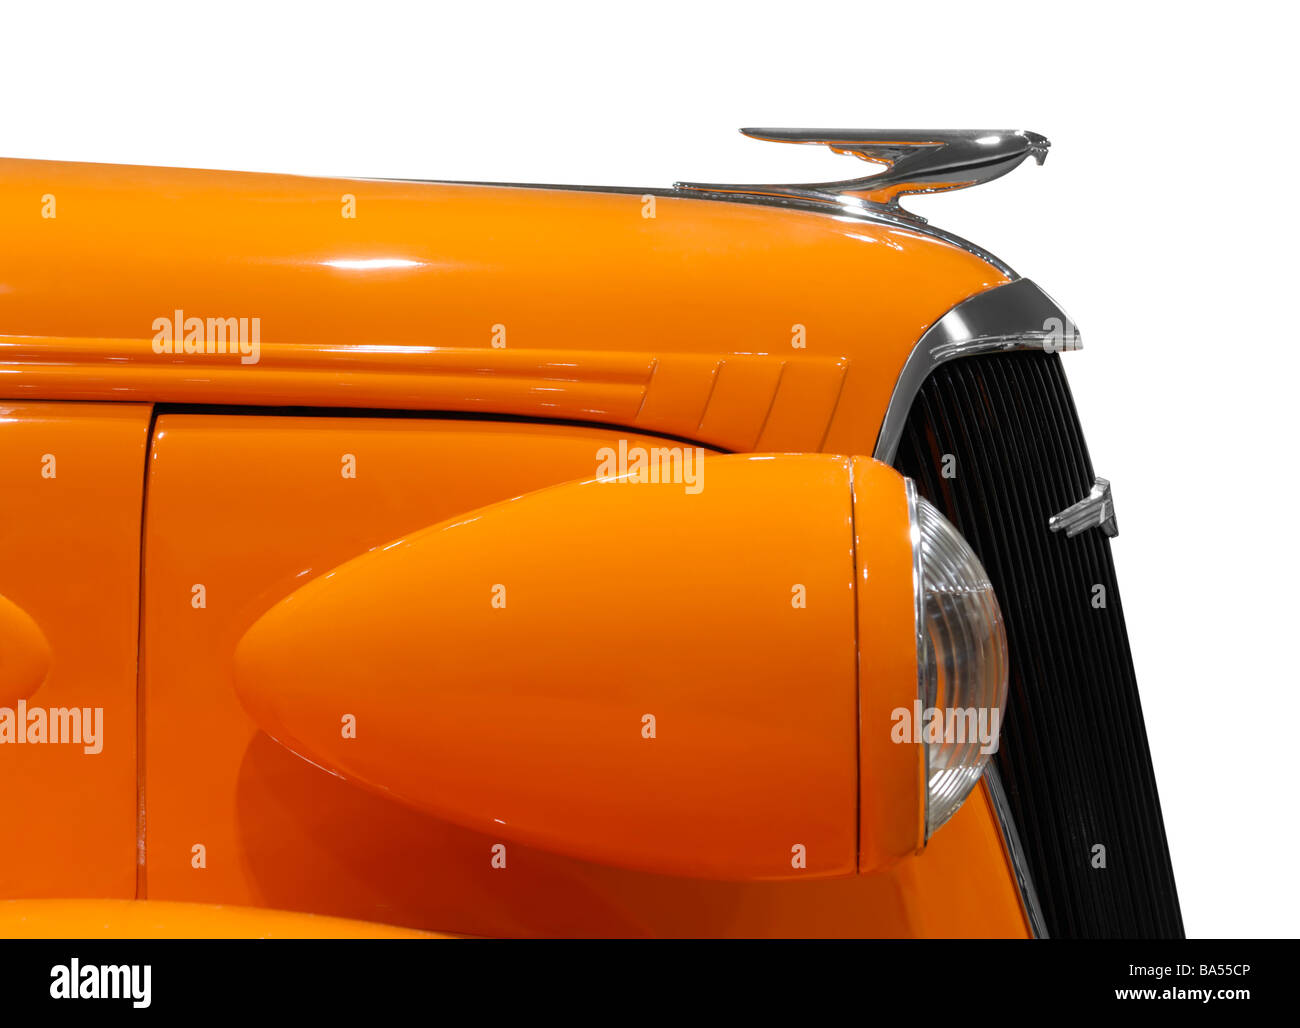 Orange classic car details Stock Photo